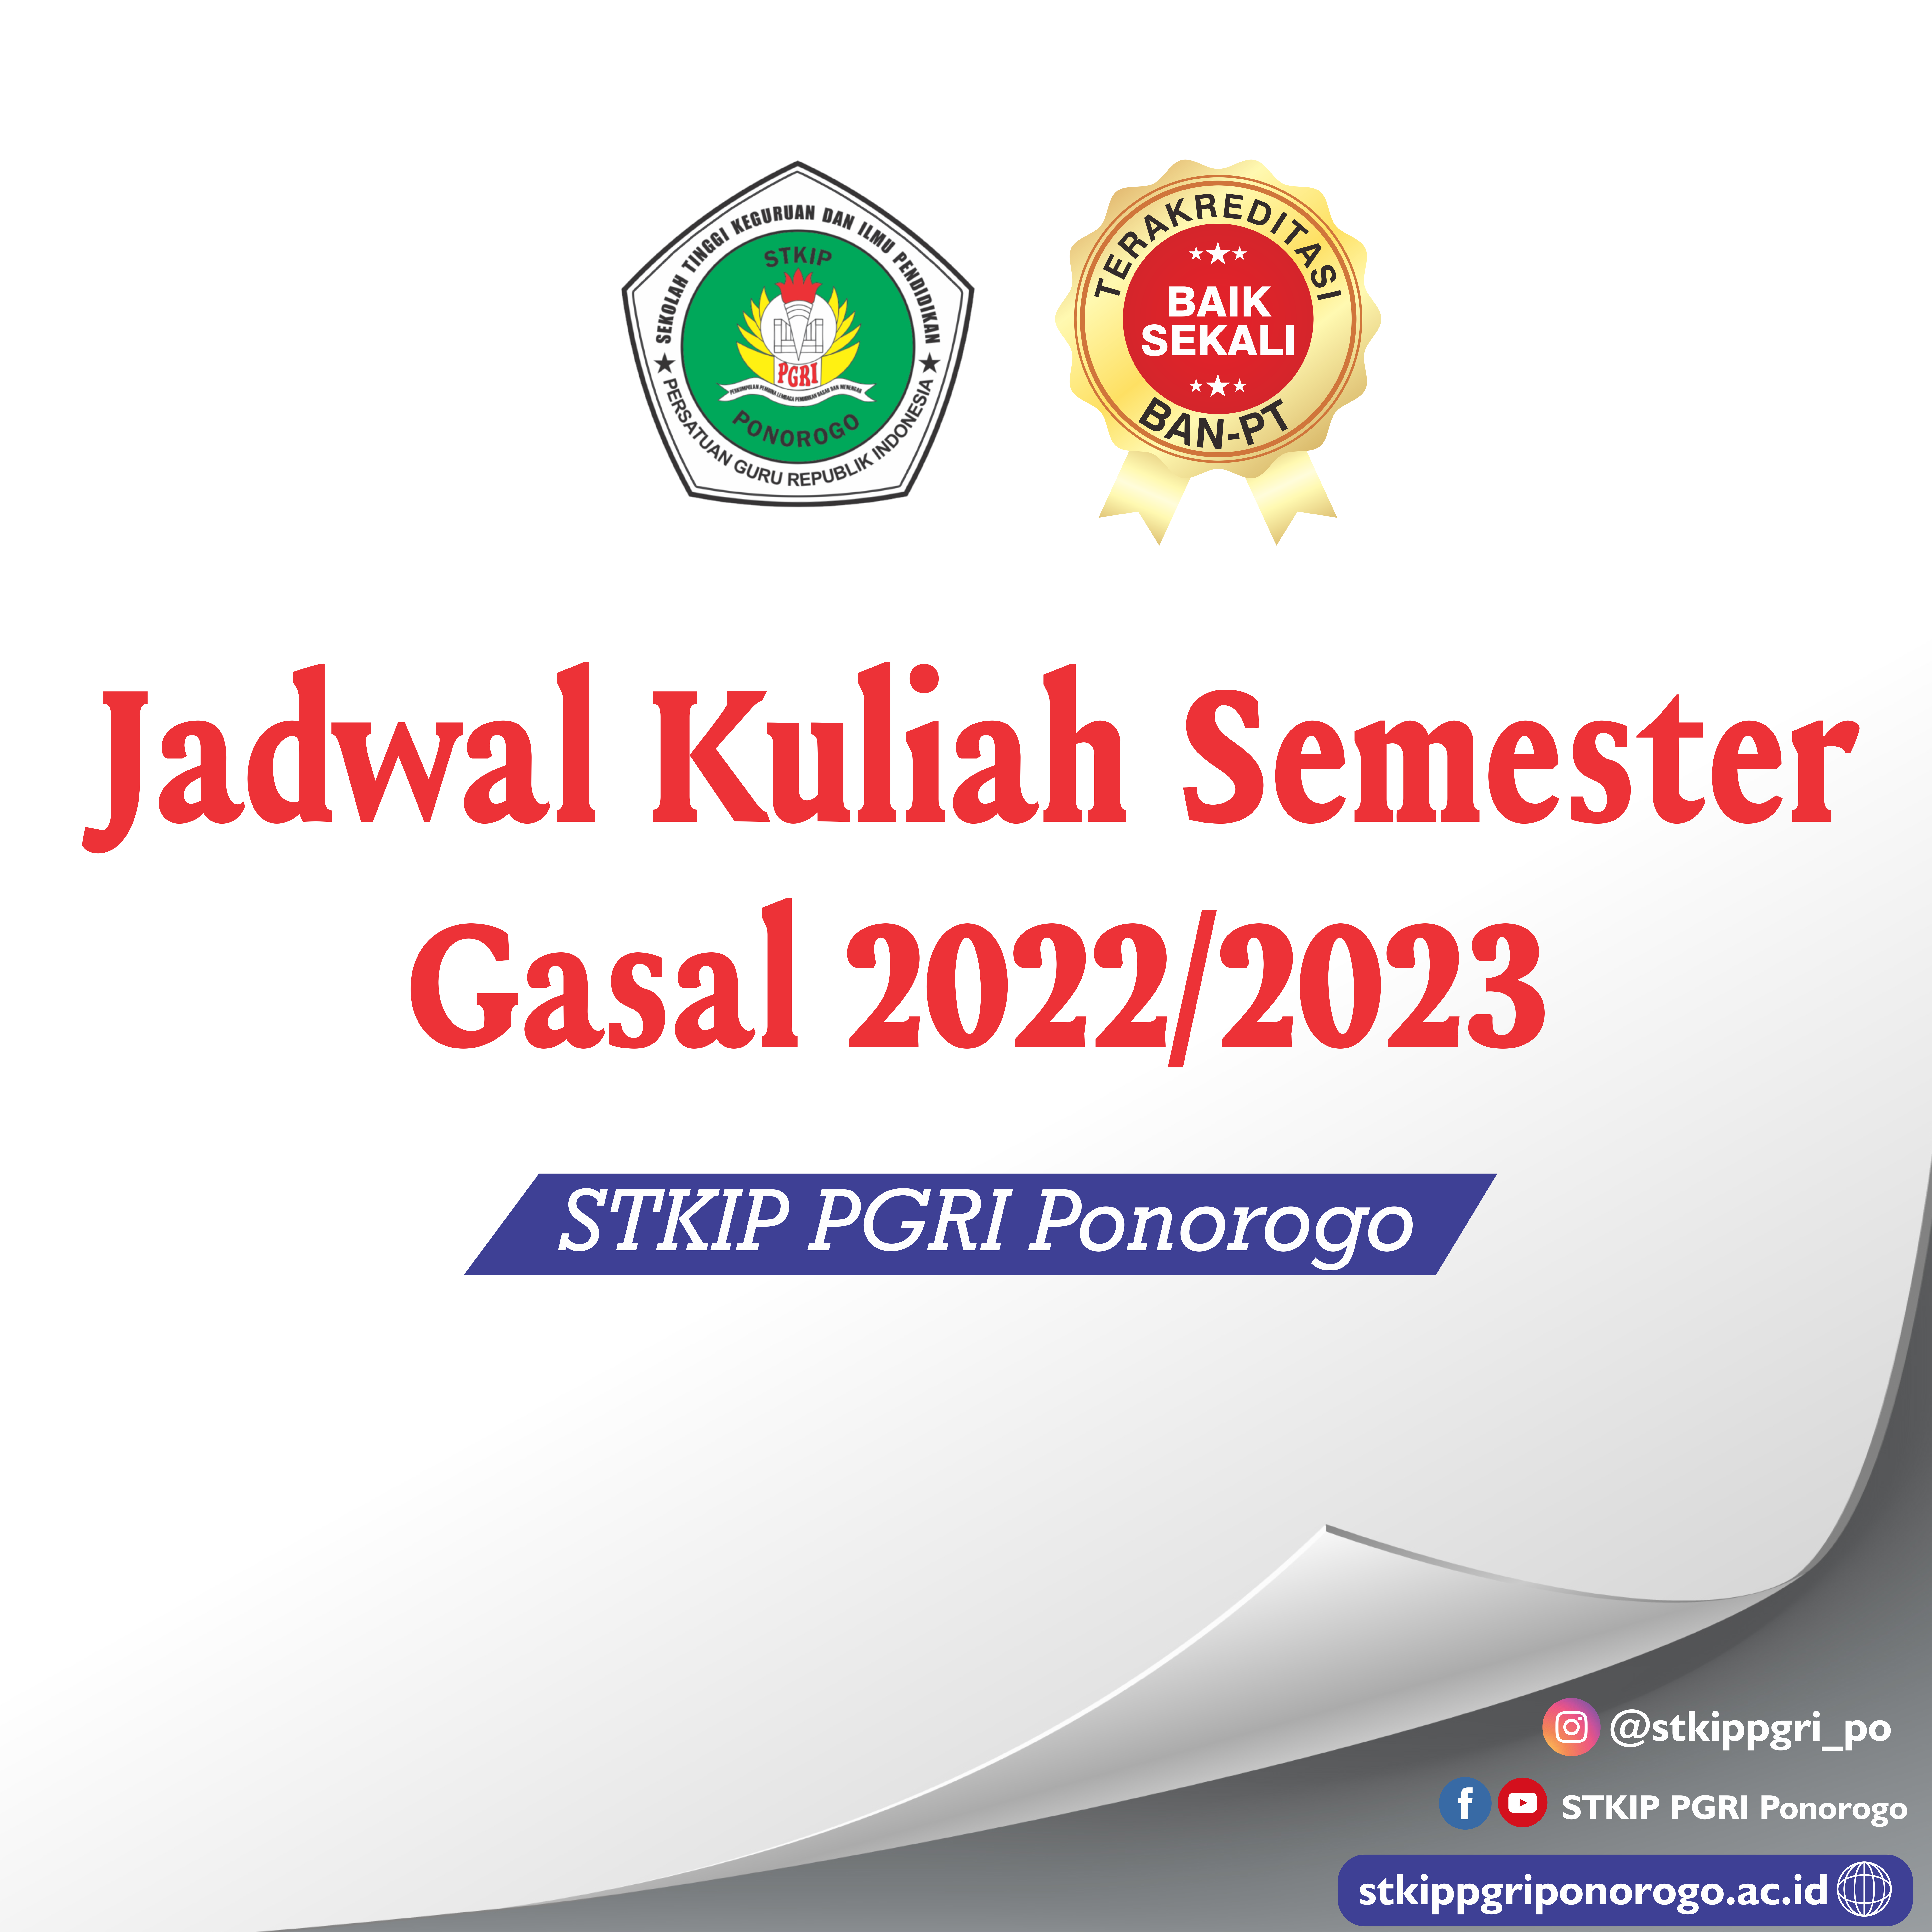 Jadwal Kuliah Semester Gasal 2022/2023